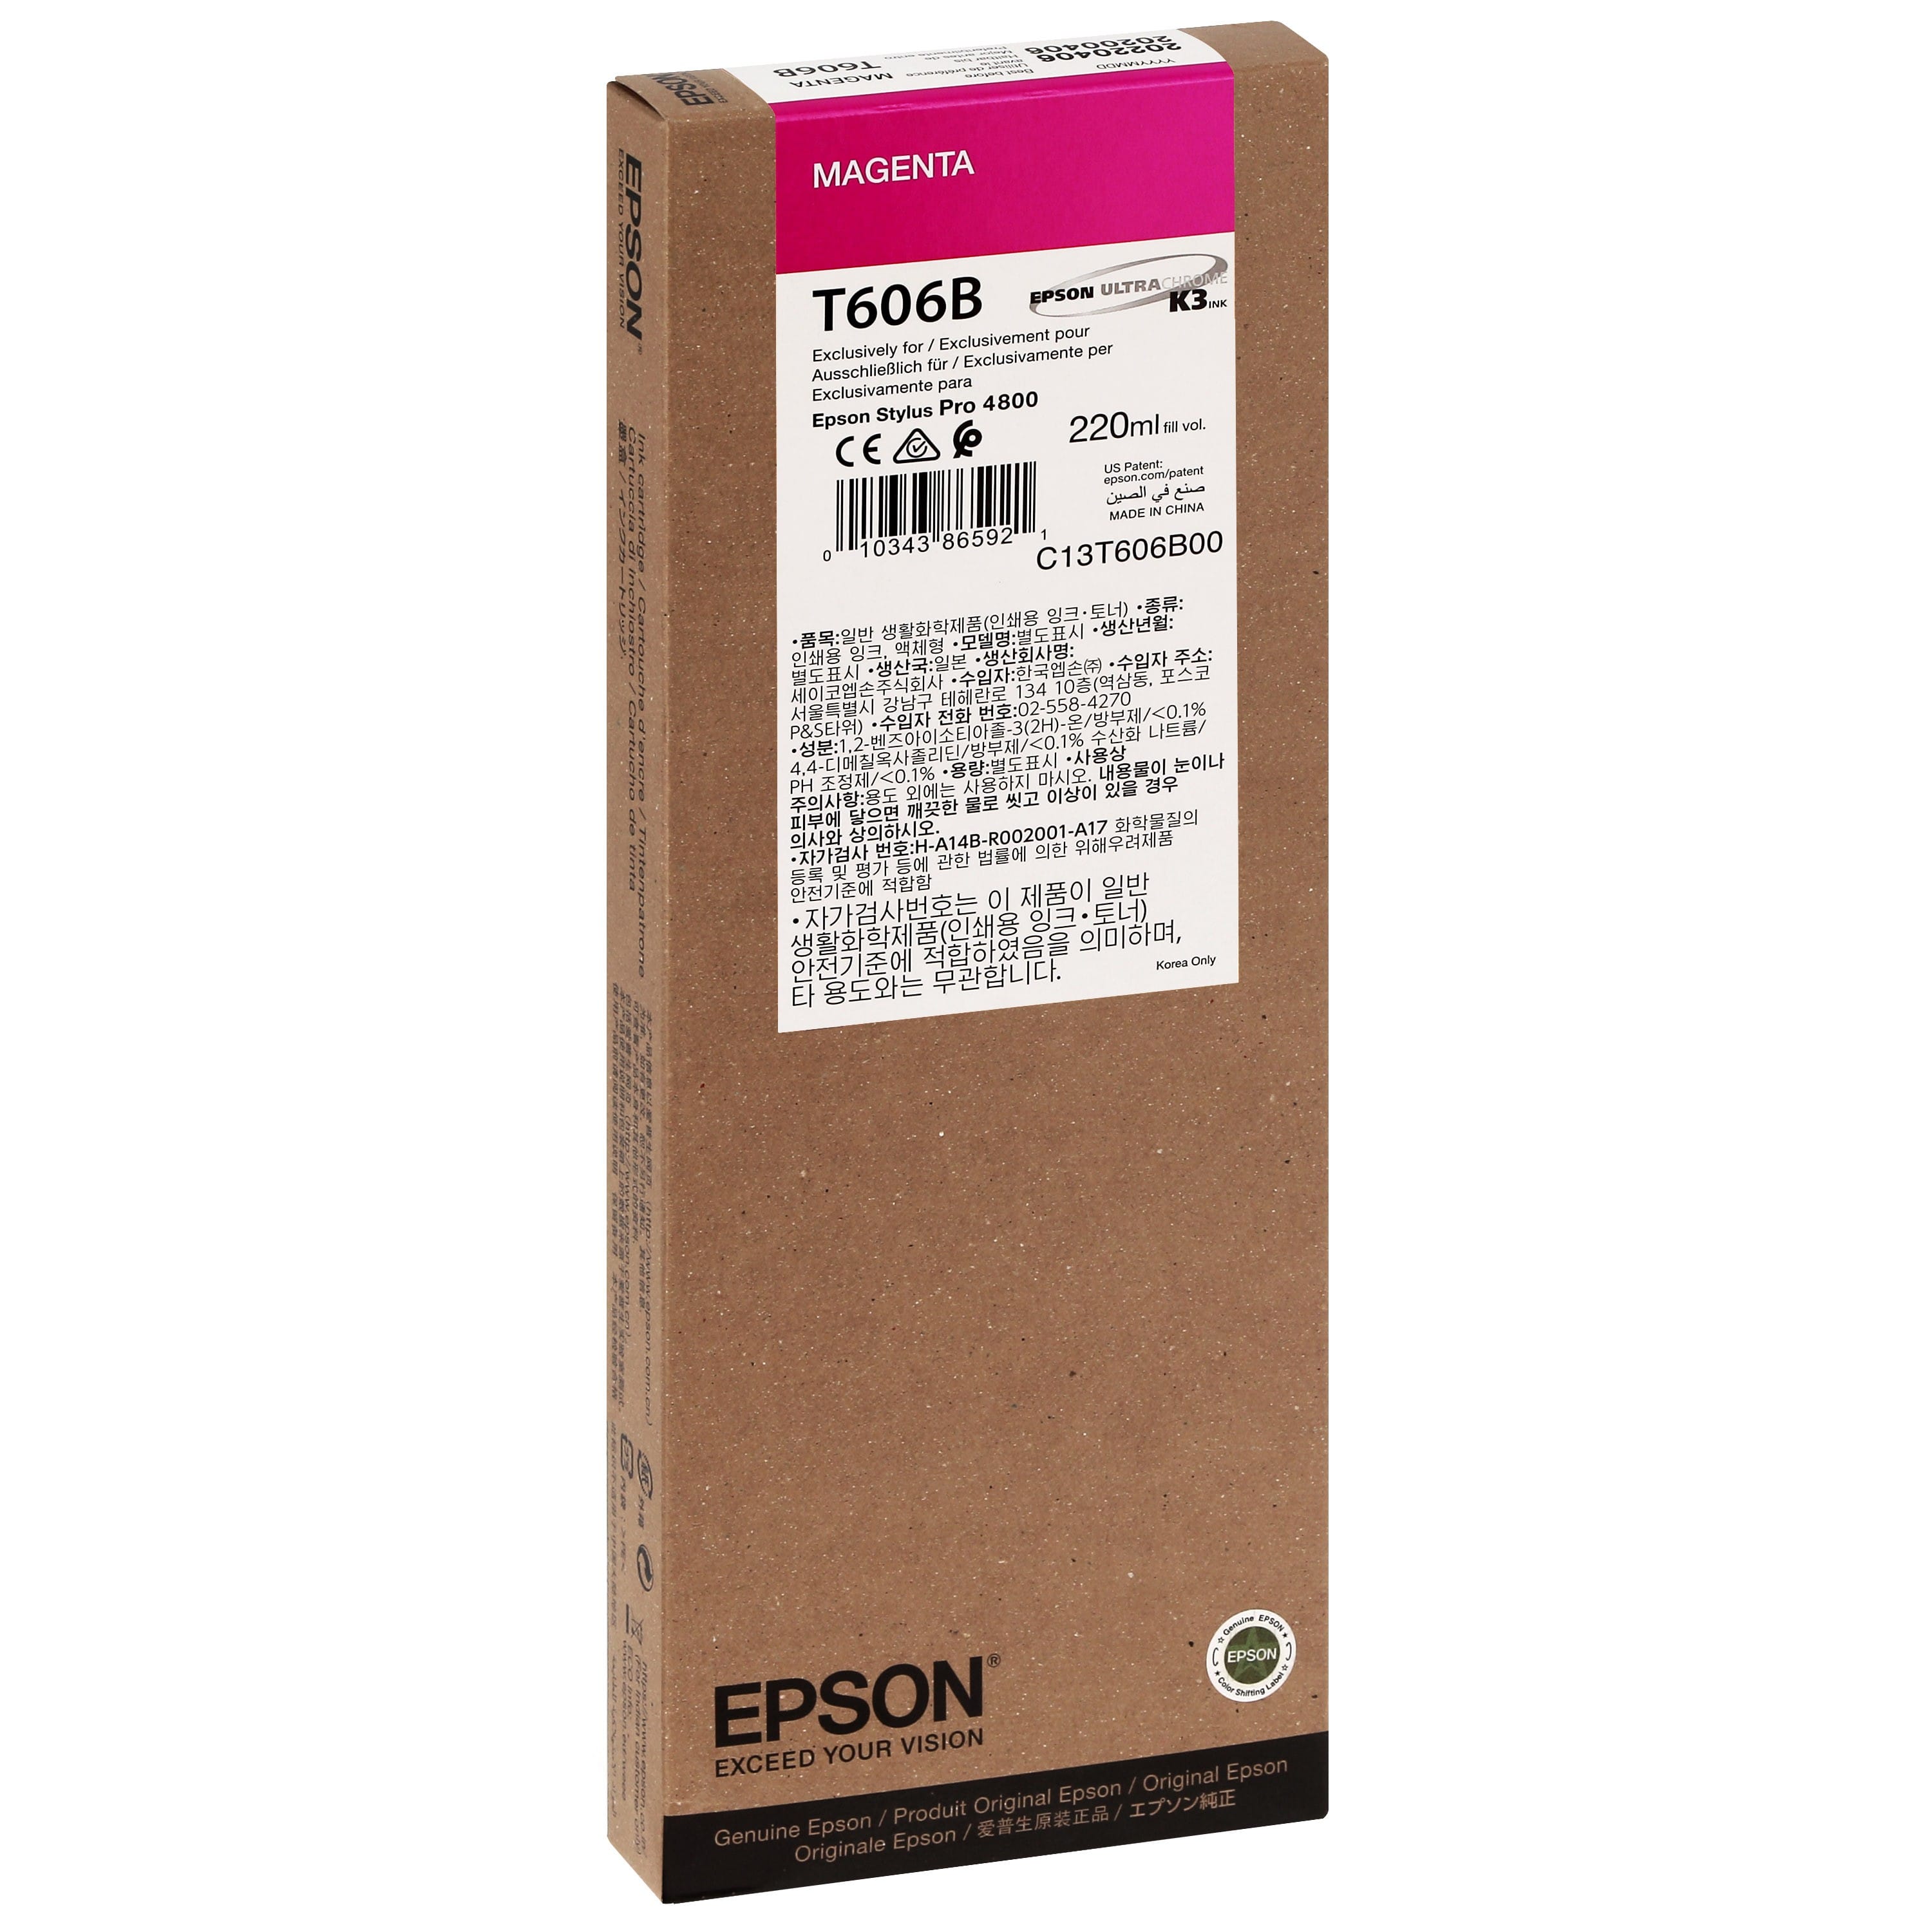 EPSON - Cartouche d'encre traceur T606B Pour imprimante 4800 Magenta - 220ml